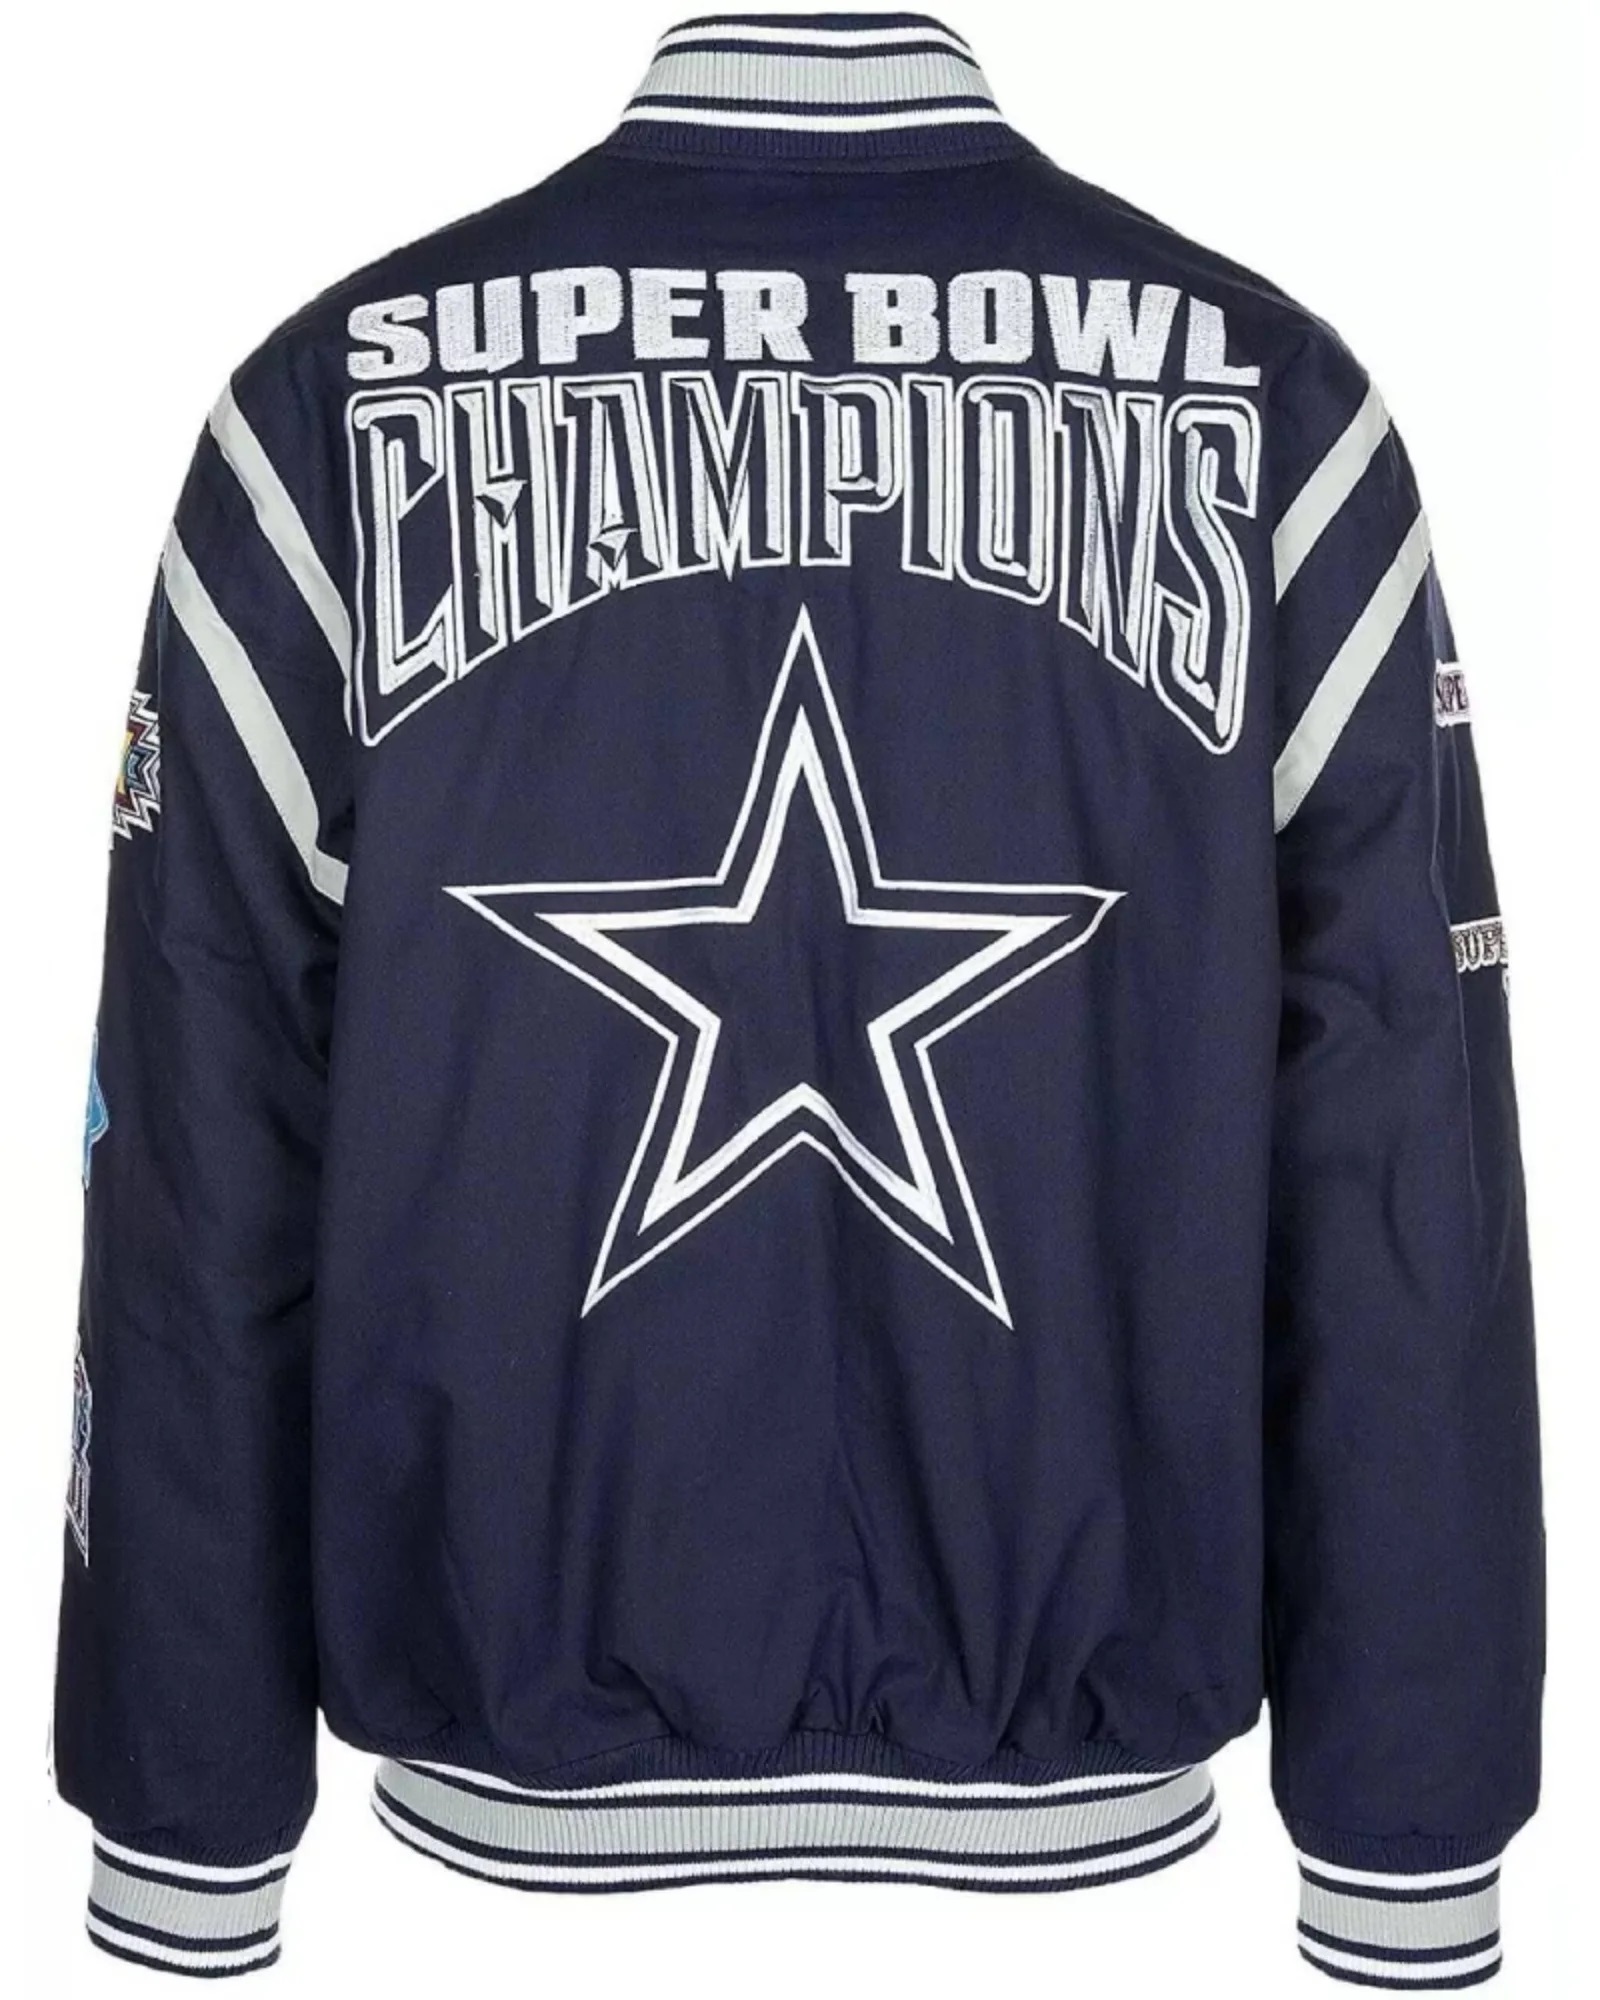 Dallas Cowboys Super Bowl 5X Champions Jacket